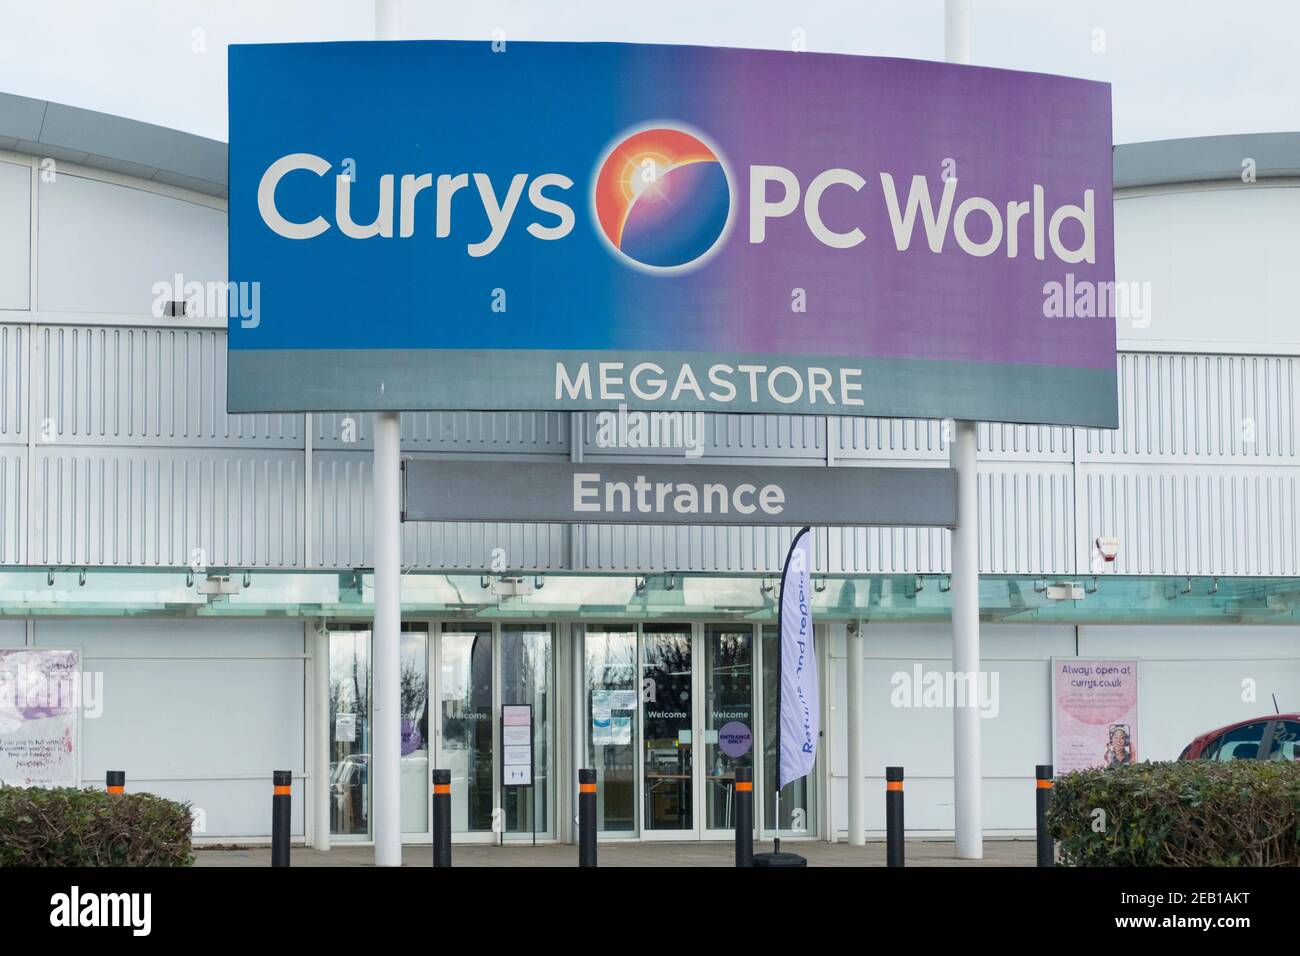 Cribbs Causeway Retail Park près de Bristol, dans le 3e éclusage Covid 19 du Royaume-Uni. Entrée du magasin Currys PCWorld. Banque D'Images